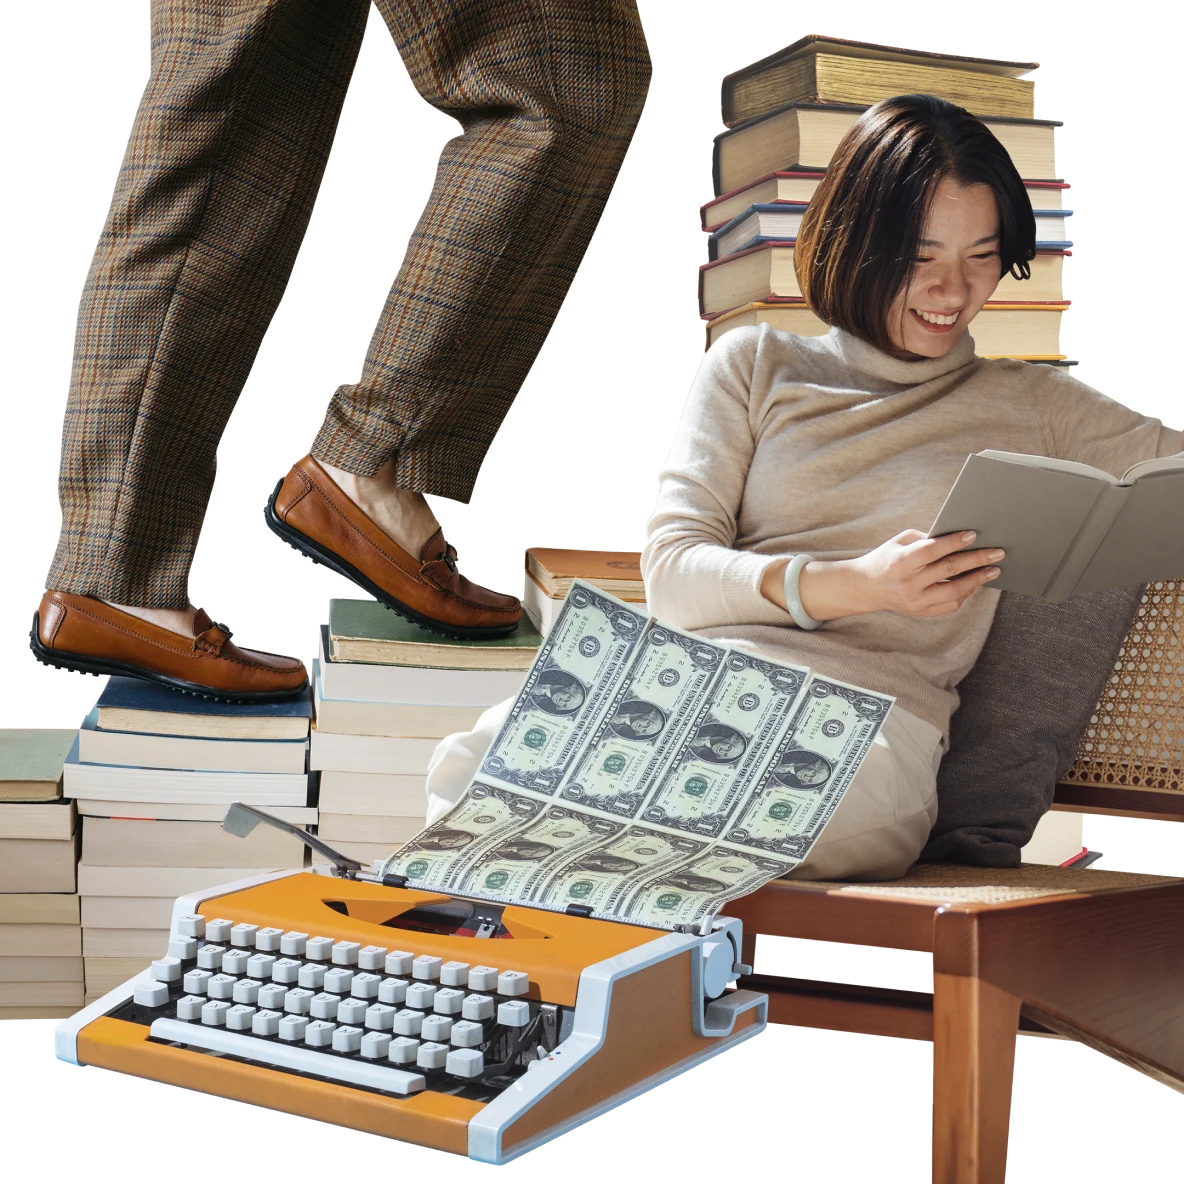 Eine Collage mit Gegenständen zum Thema Finanzen. Eine ostasiatische Frau in einem beigen Kleid auf der rechten Seide lächelt und liest in einem Notizbuch. Links steigen Beine in einer karierten Hose einen Bücherstapel hinauf. Im Vordergrund eine orangefarbene Schreibmaschine mit weißen Tasten, aus der Geldscheine gedruckt werden.